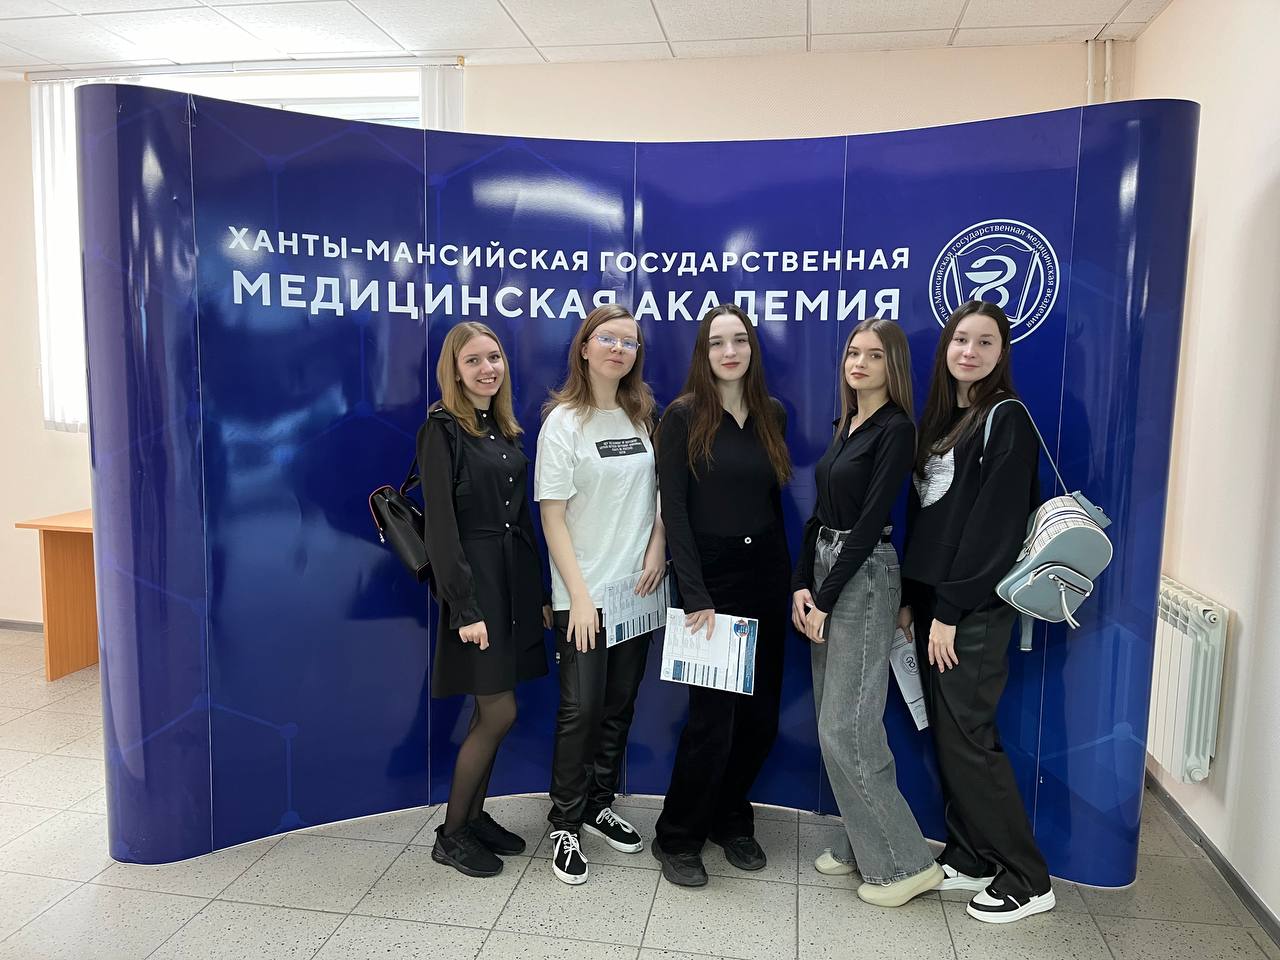 Экскурсия в Ханты-Мансийскую государственную медицинскую академию.